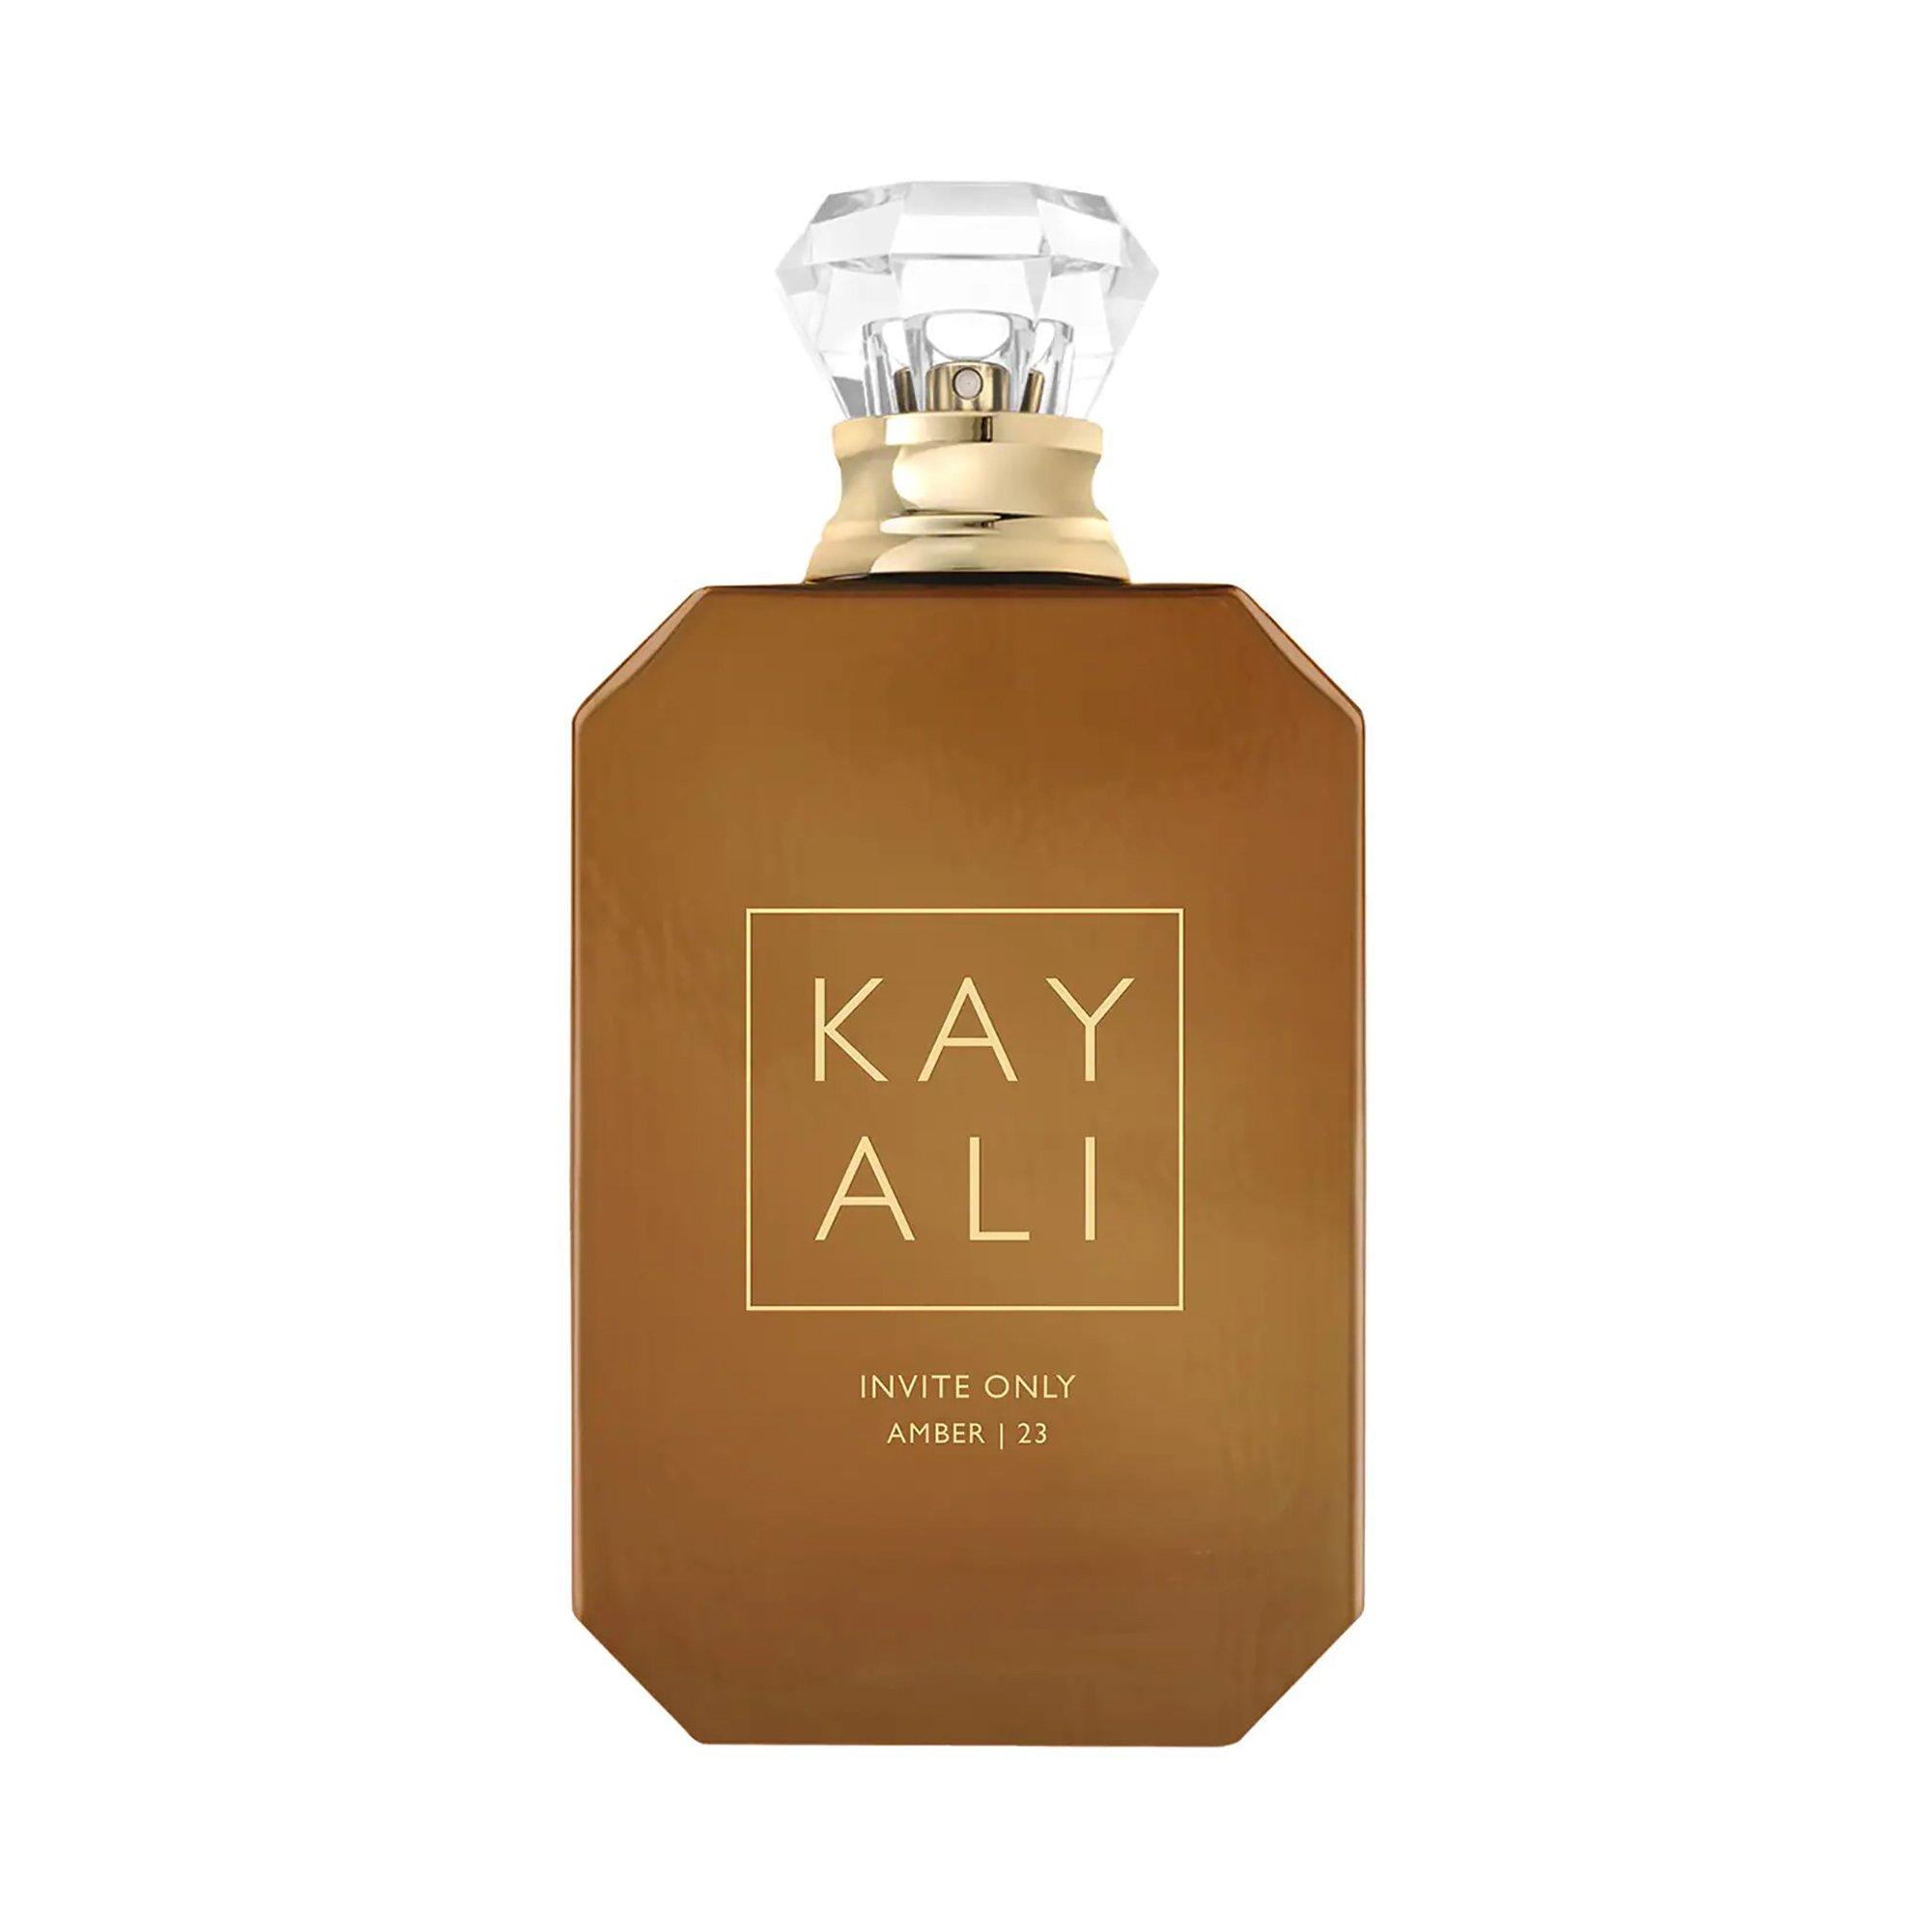 Image of Kayali Invite Only Amber l 23 - Eau de Parfum - 50ml